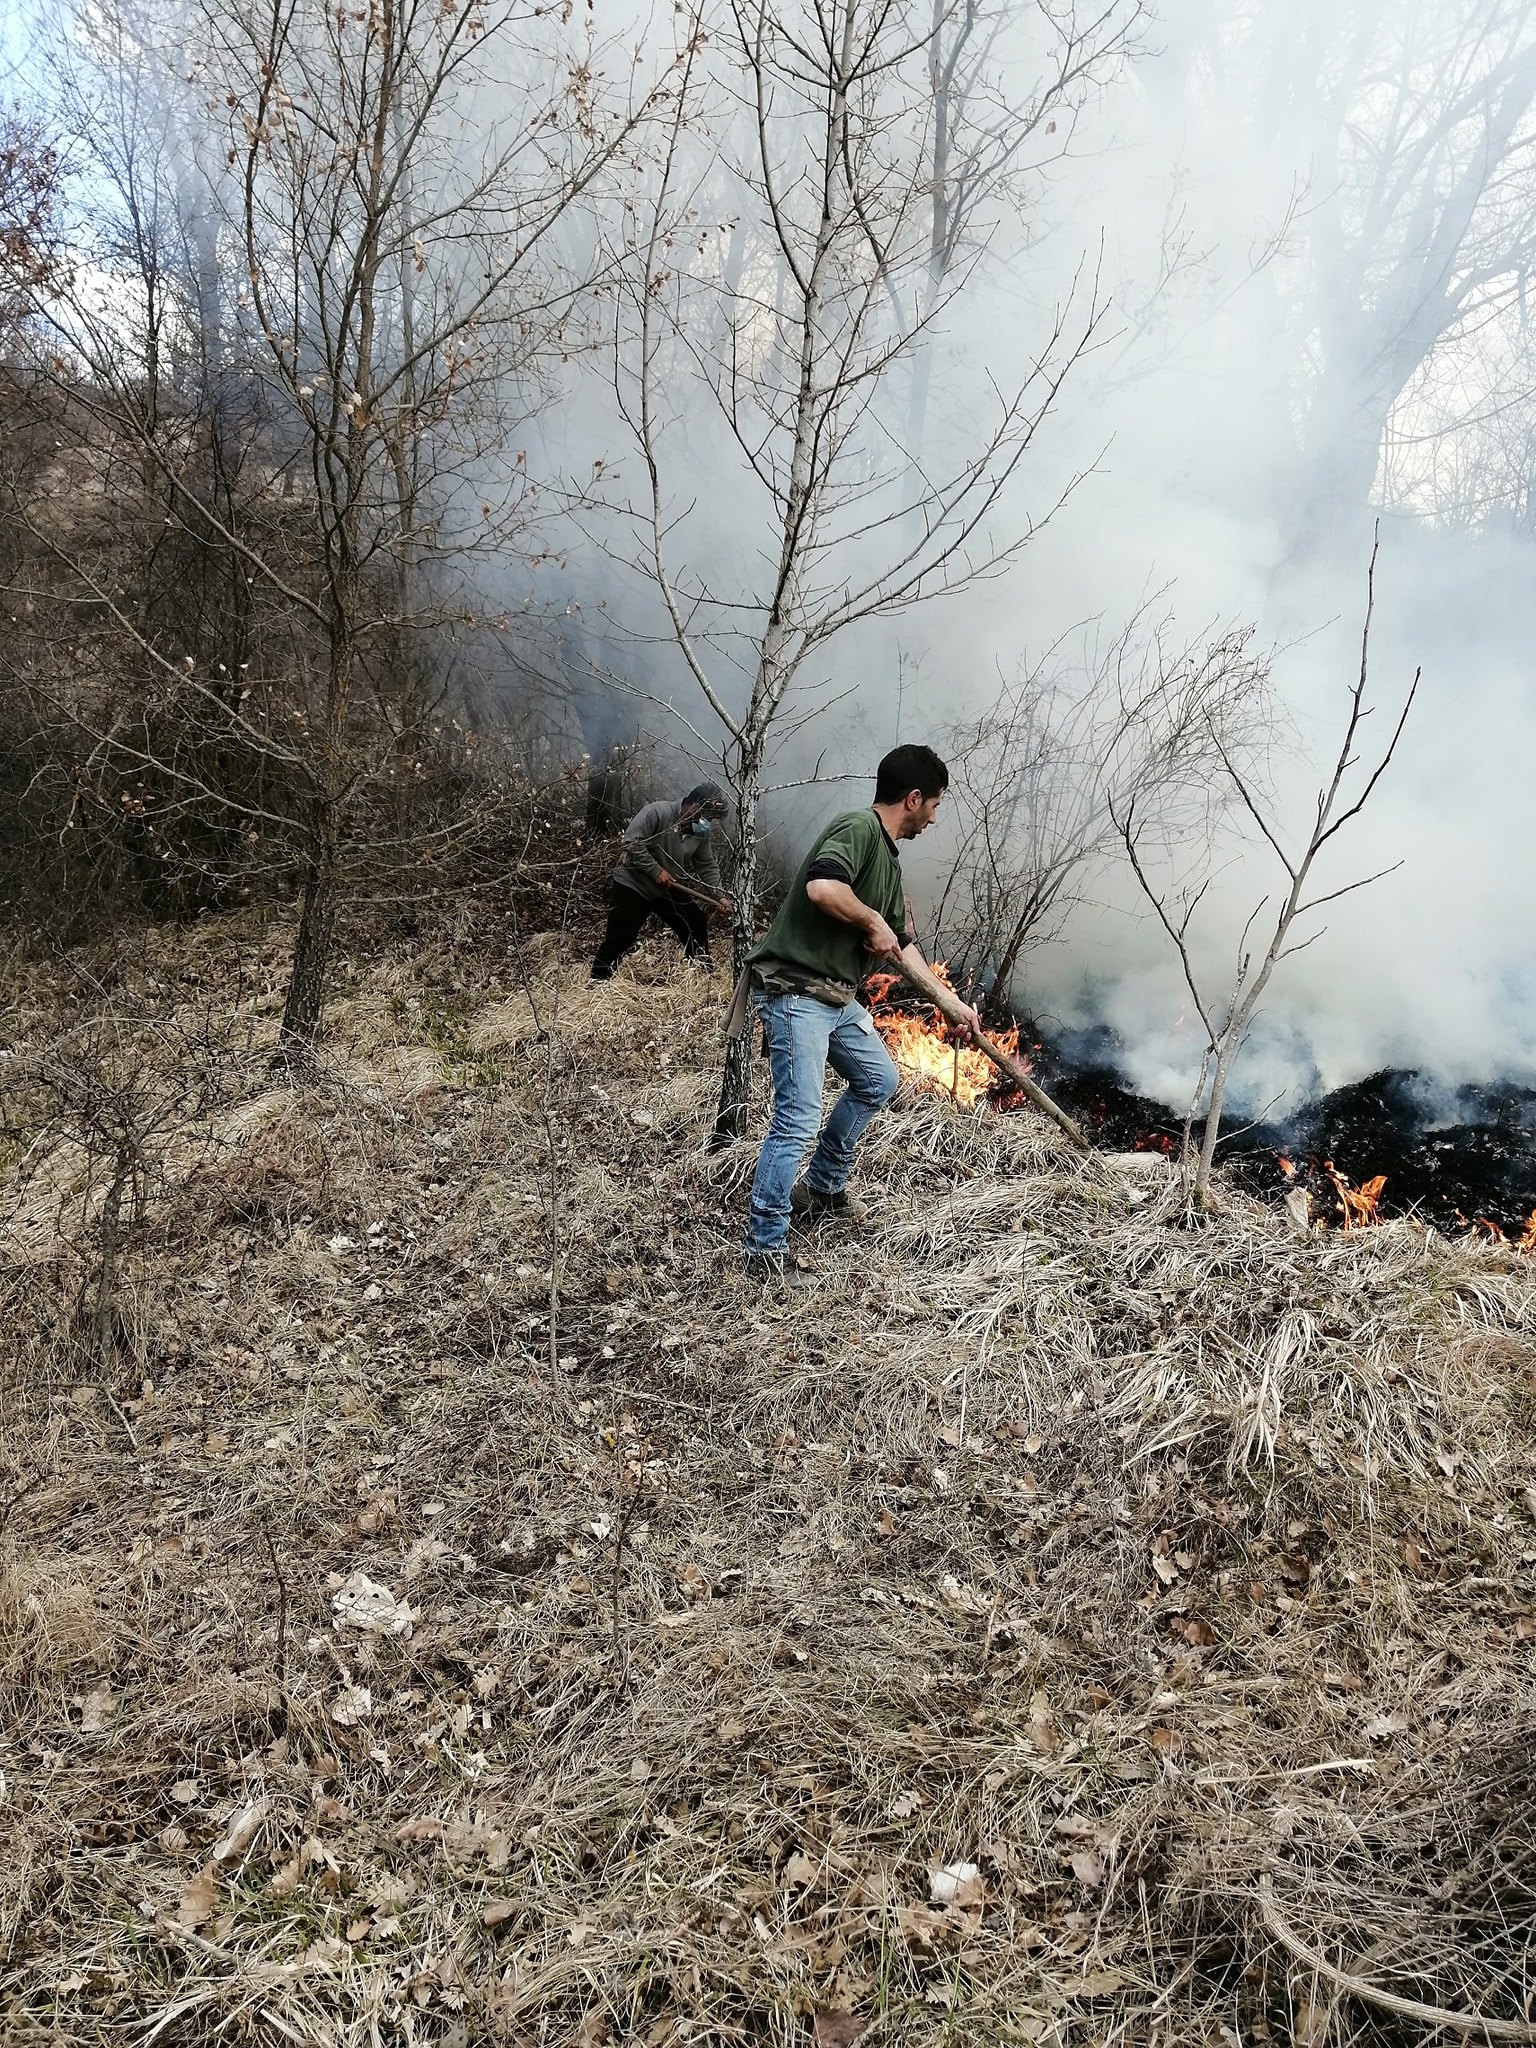 Incendio nei boschi delle “Surienti” ad Aielli, evitato il peggio grazie ai Vigili del Fuoco e ai volontari